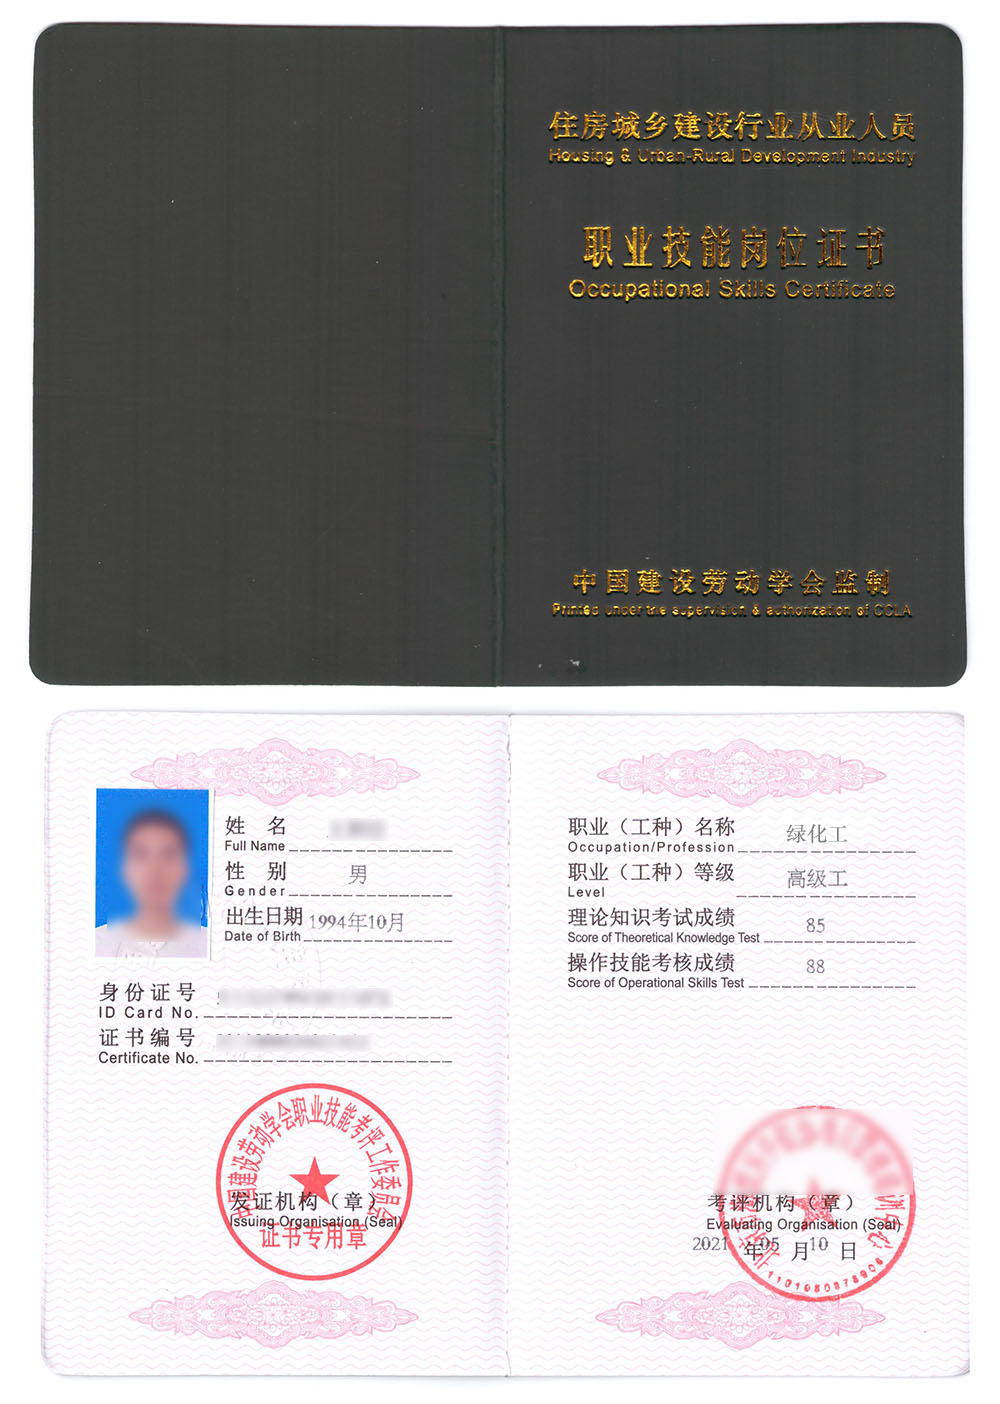 中国建设劳动学会 职业技能岗位证书 绿化工证证书样本